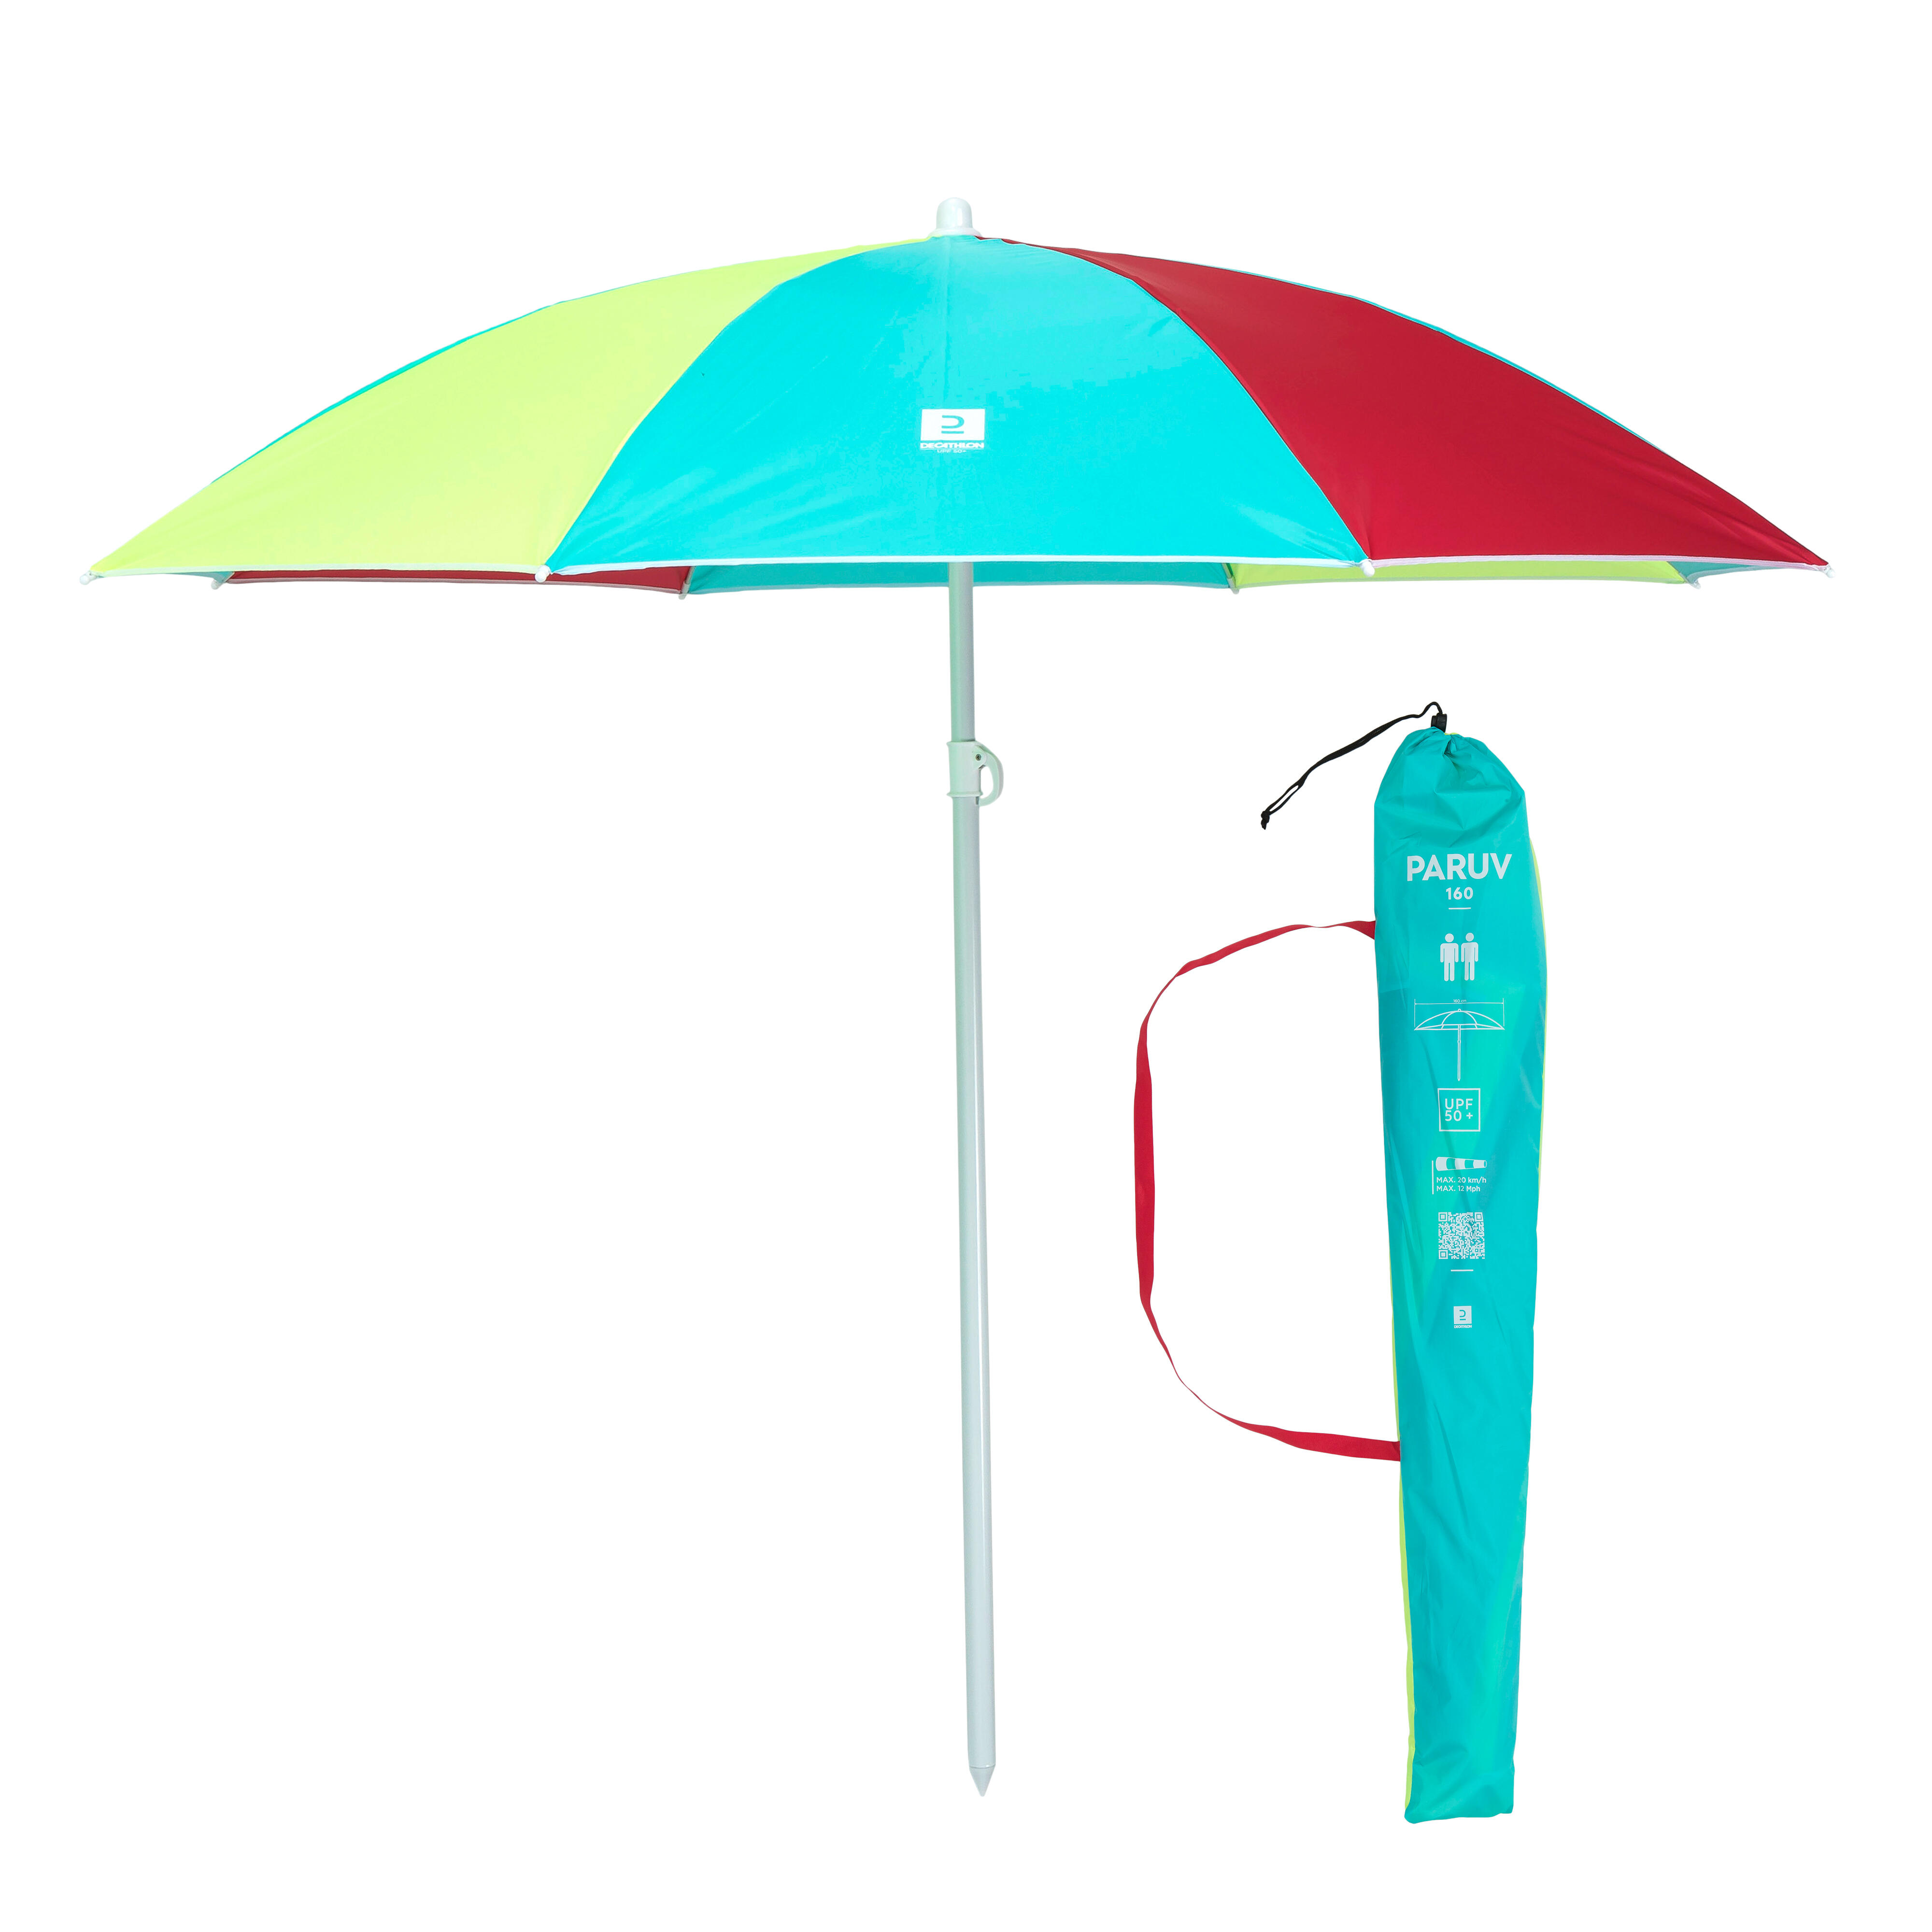 Umbrela De Plaja Paruv 160 Upf 50+ 2 Locuri - Multicolor Rosu Galben Albastru